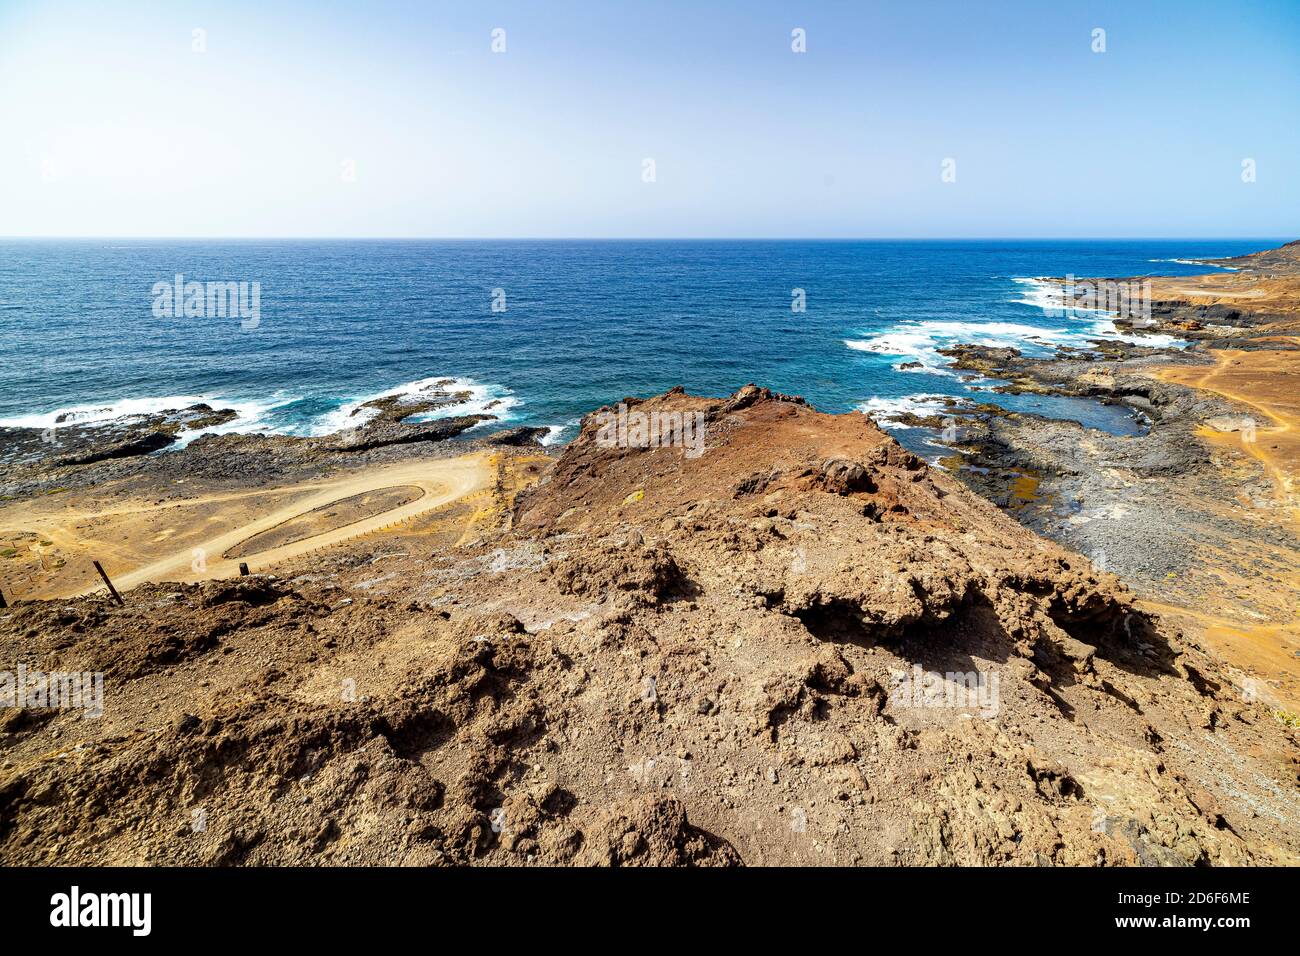 View of 'Lomo de los dos morros' on the coast of 'La Isleta' - peninsula north of Las Palmas, Gran Canaria, Spain Stock Photo